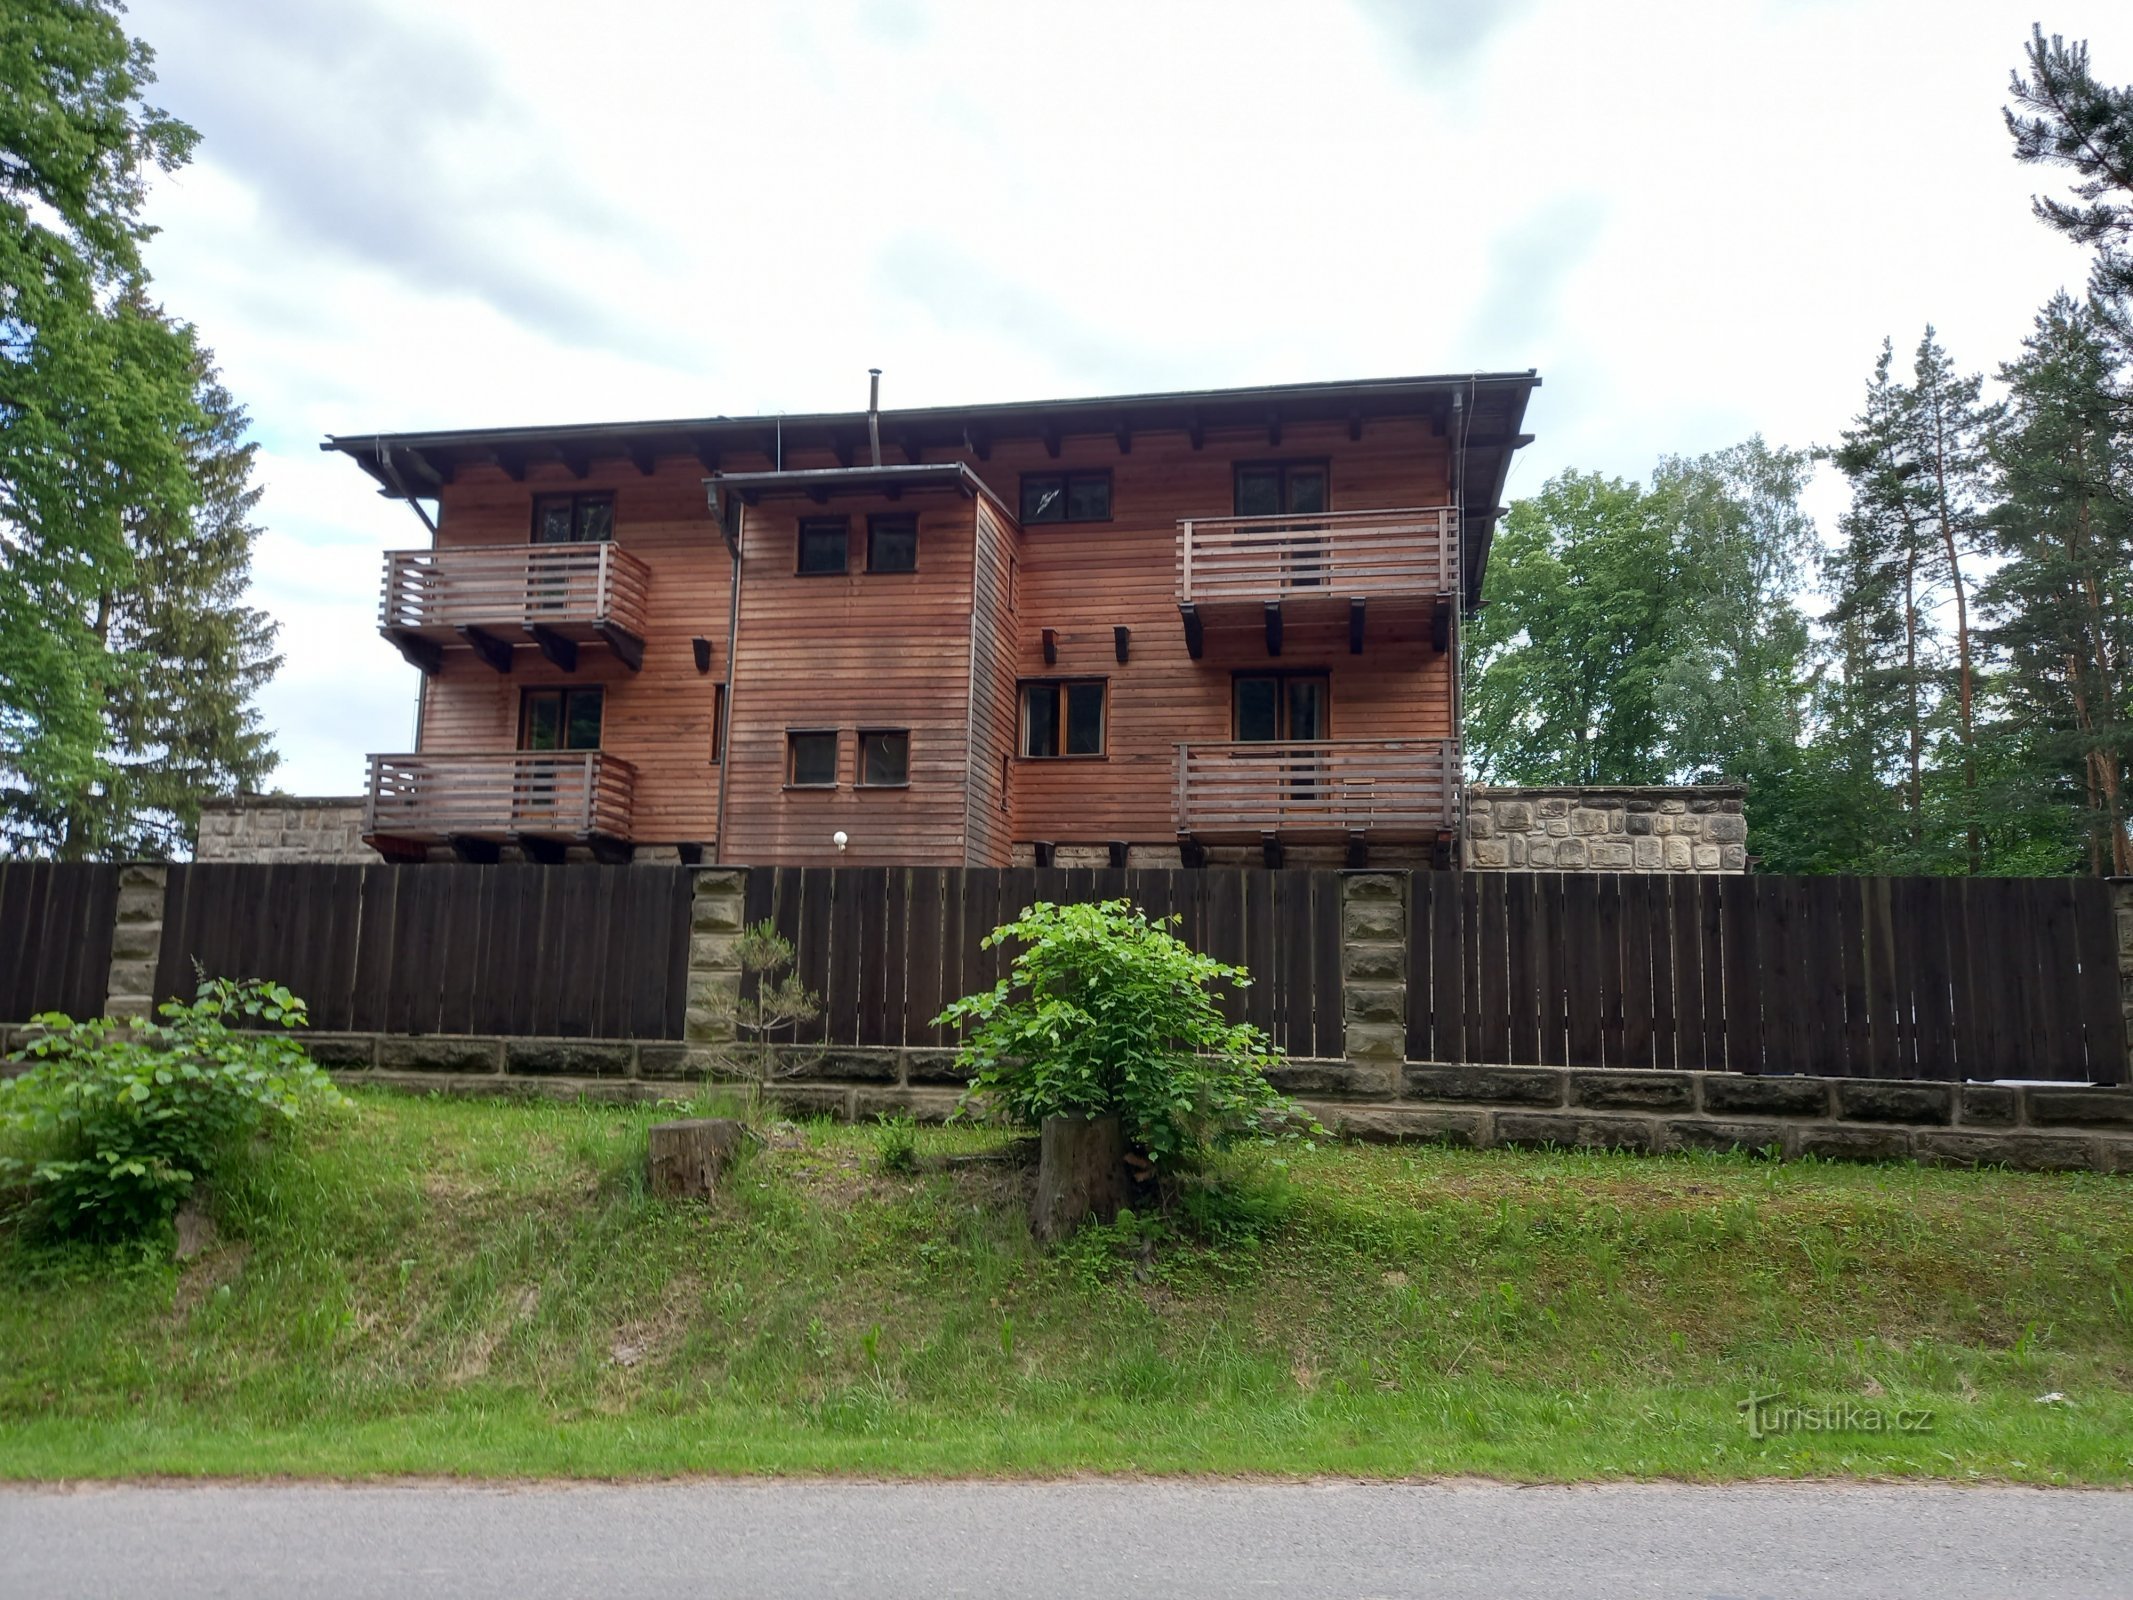 Σπίτι των αδελφών Čapk στο Μπούντισλαβ